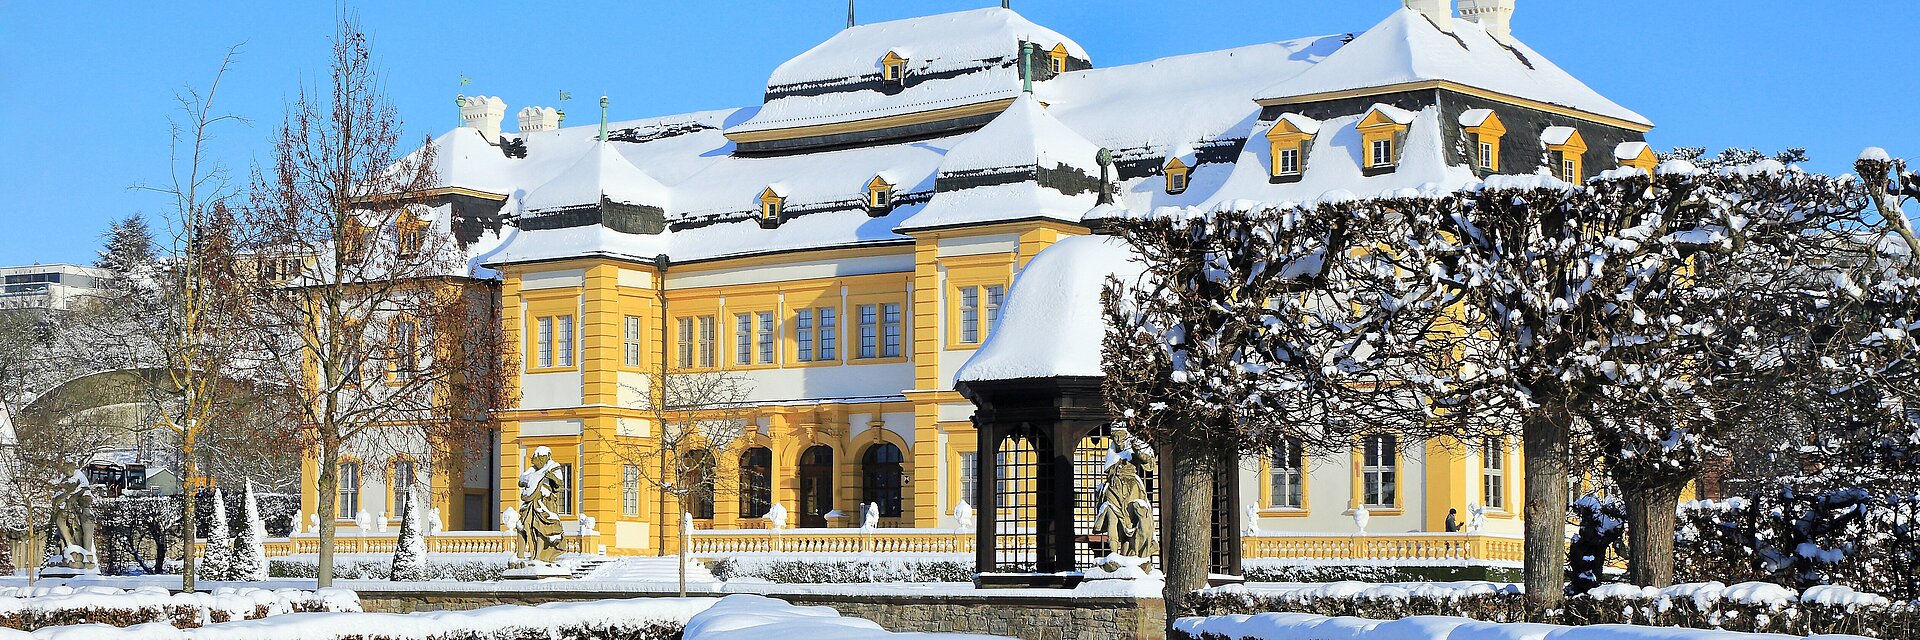 Veitshöchheimer Schloss im Schnee